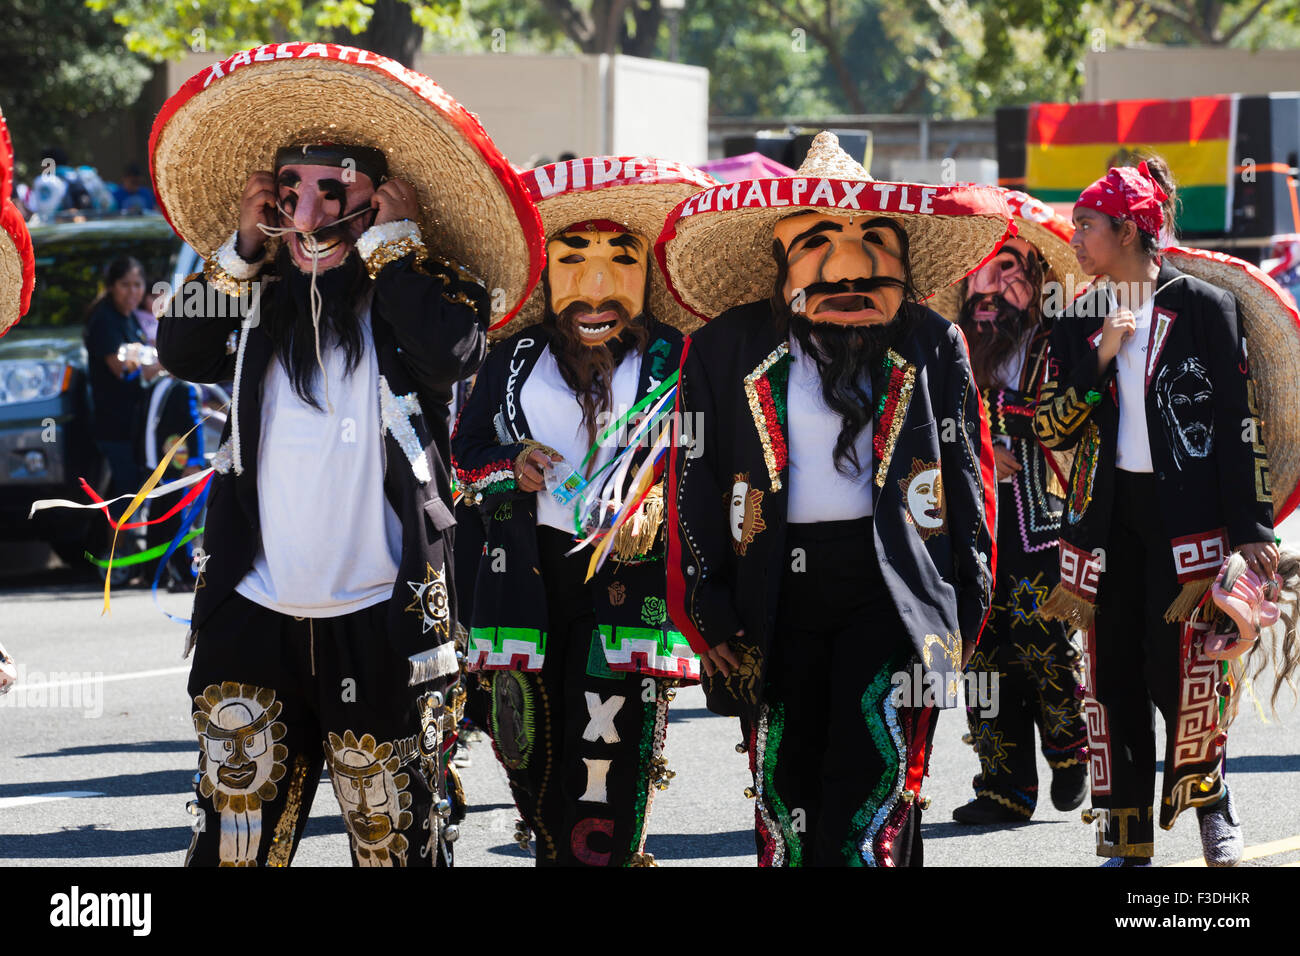 Tastoanes mascherato (tradizionale danza messicana) al Fiesta DC - Washington DC, Stati Uniti d'America Foto Stock